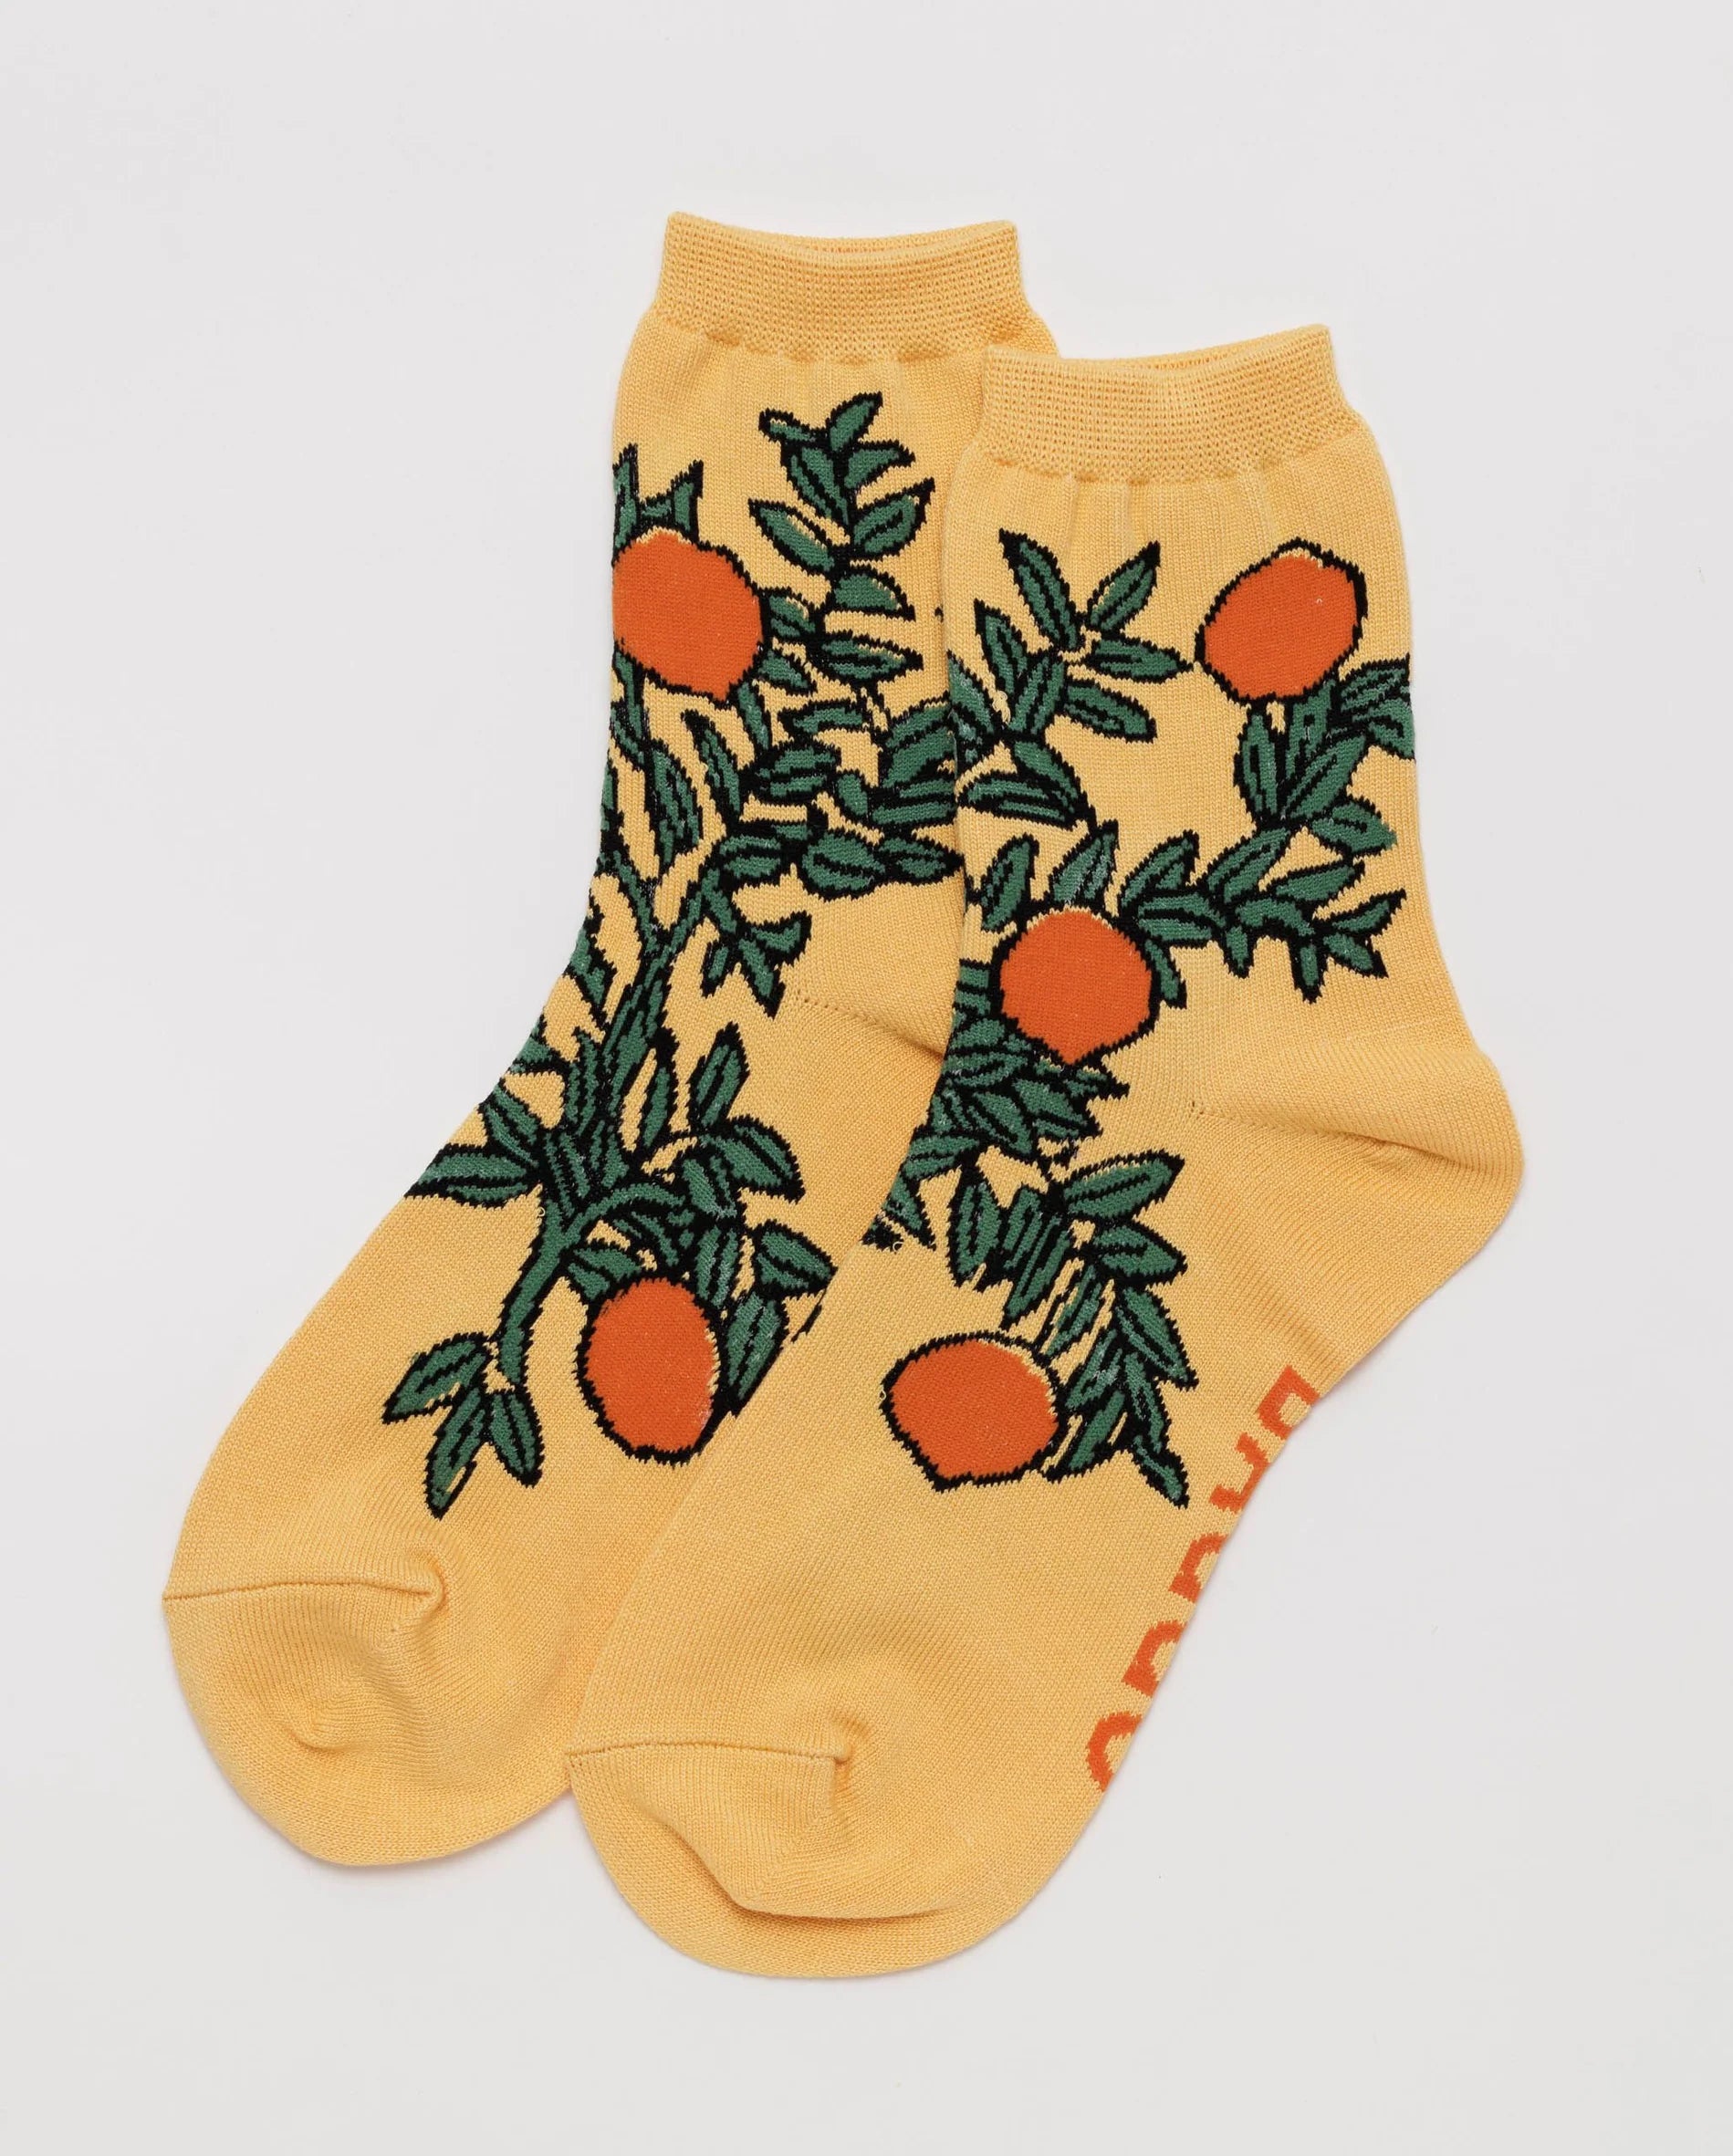 BAGGU adult crew orange socks in orange tree pattern